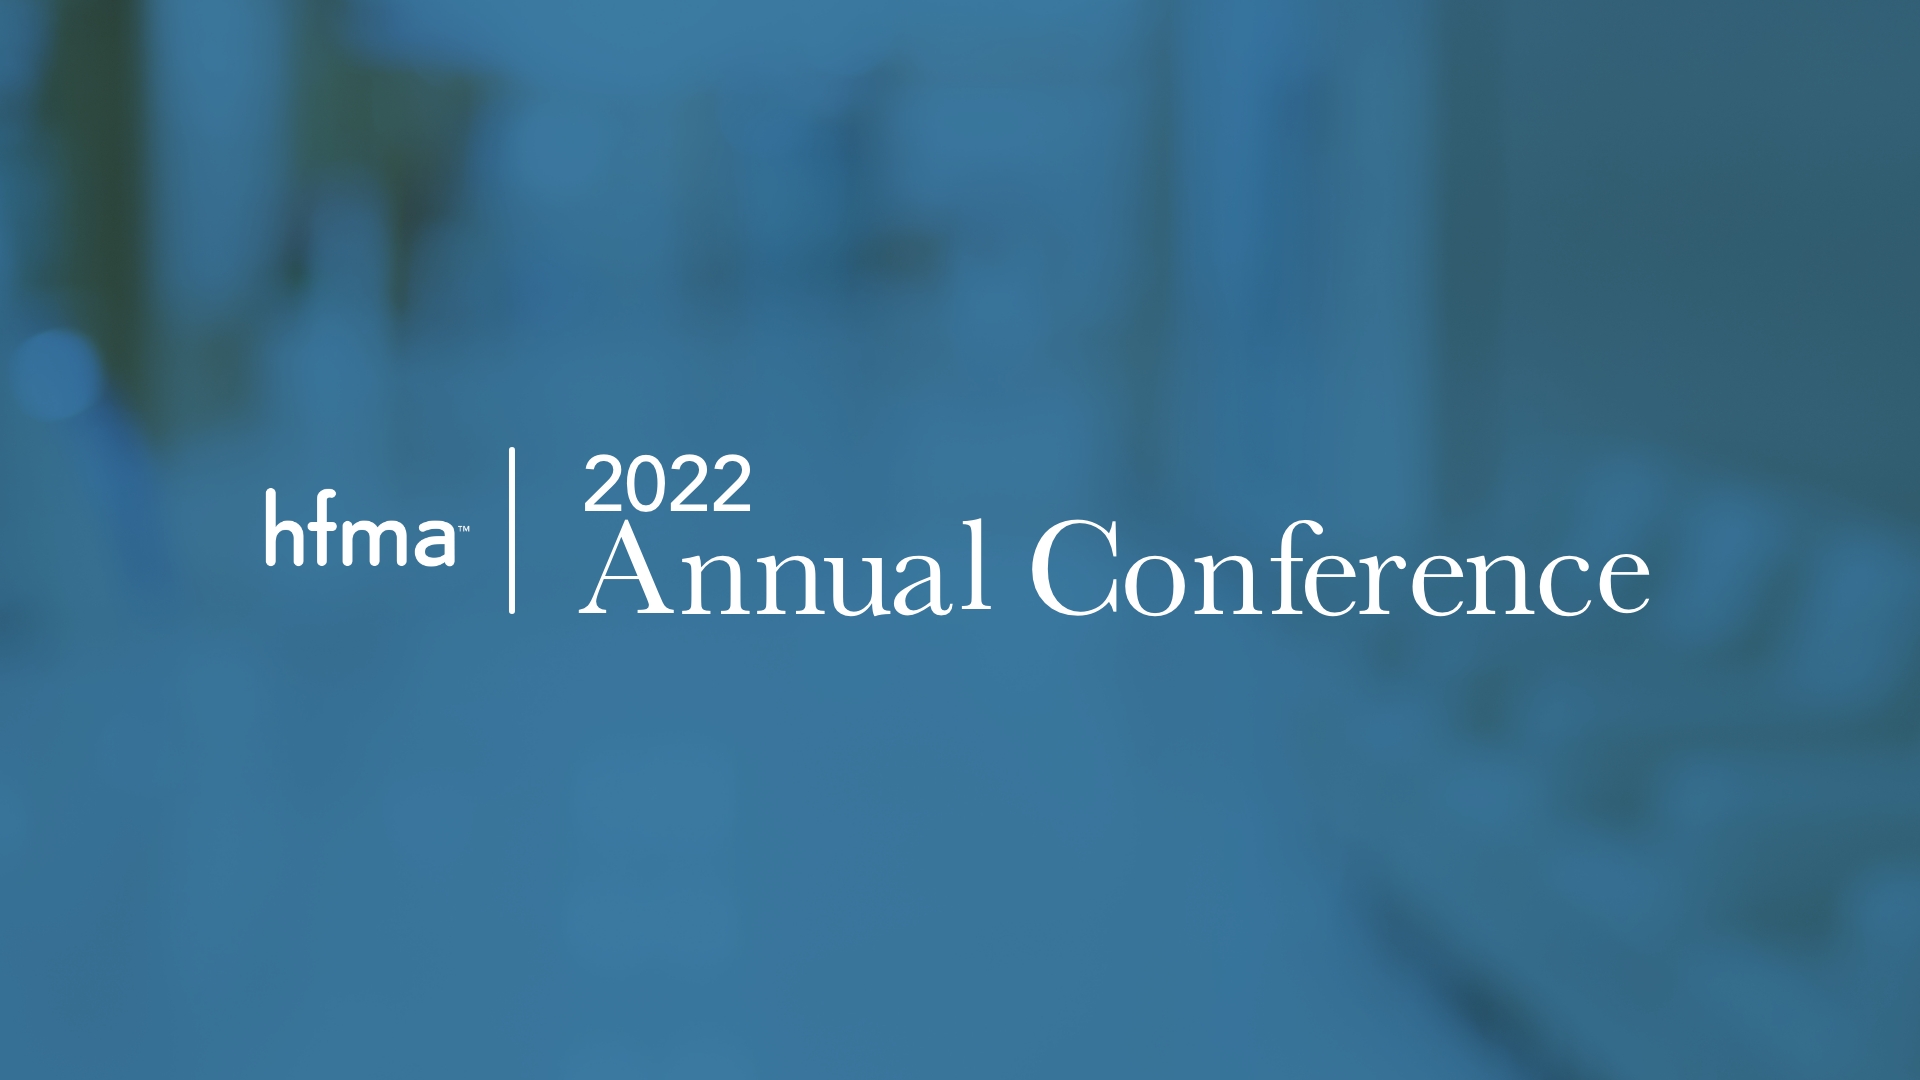 HFMA Annual Conference Vecna Healthcare